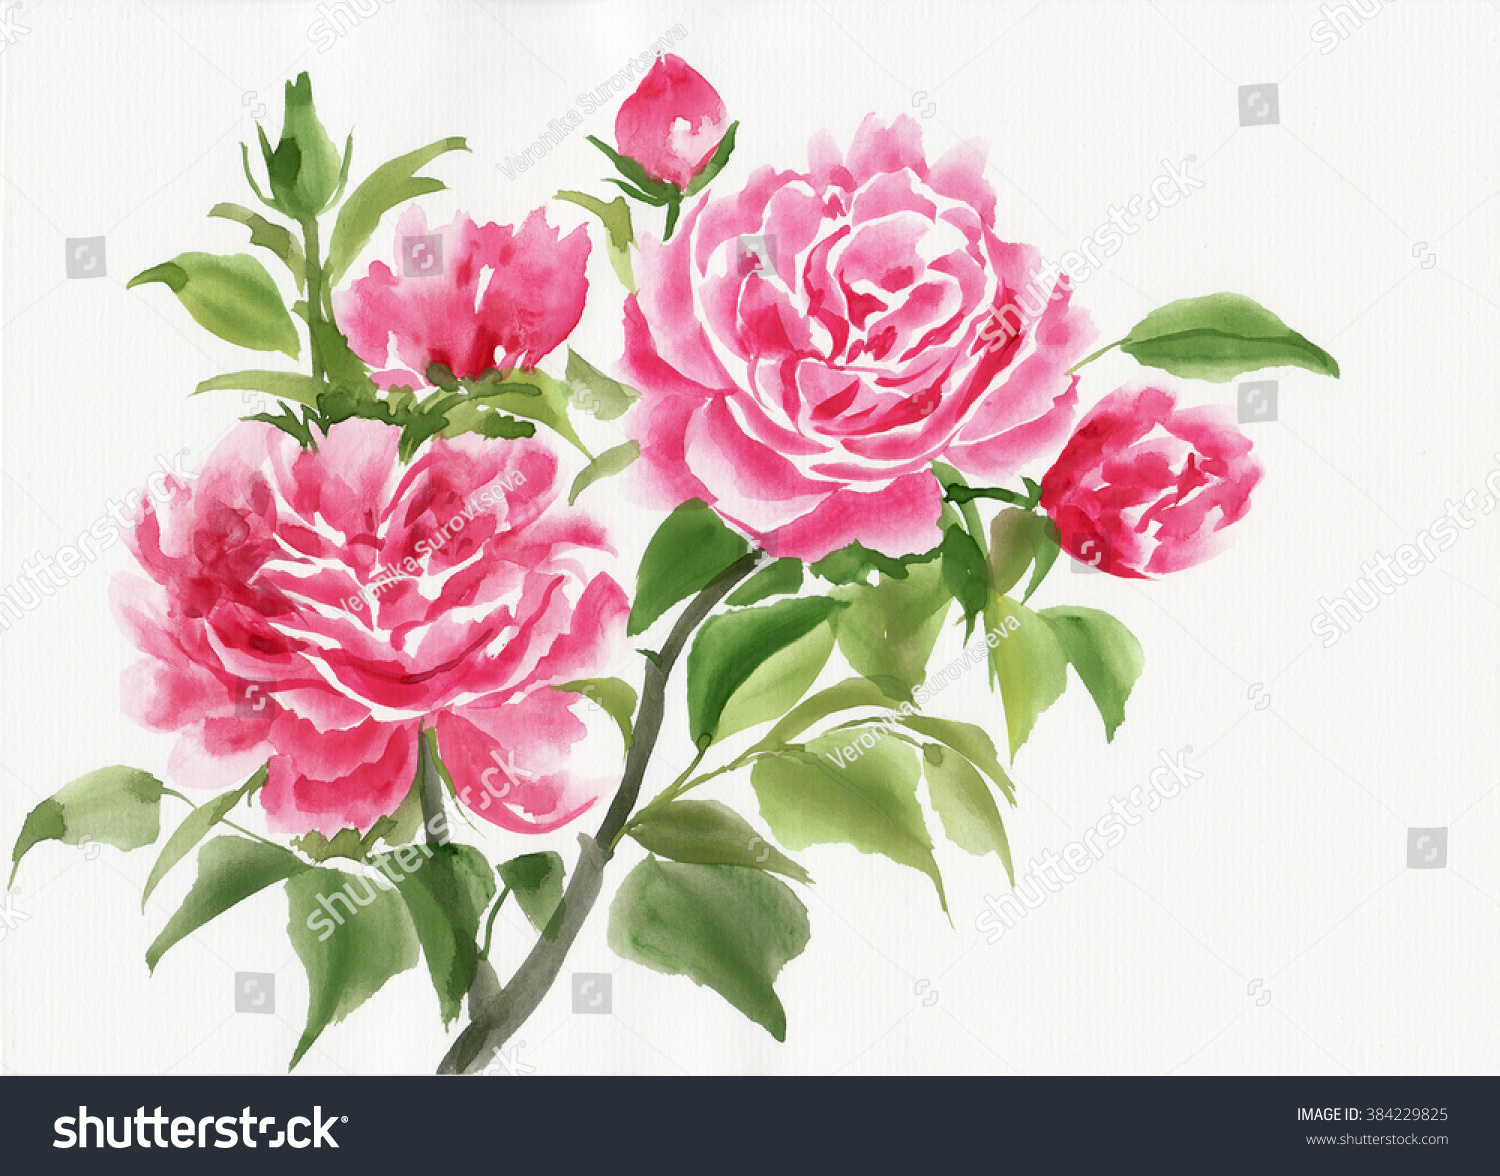 Pink Rose Bush Original Watercolor Painting Stock Illustration 384229825